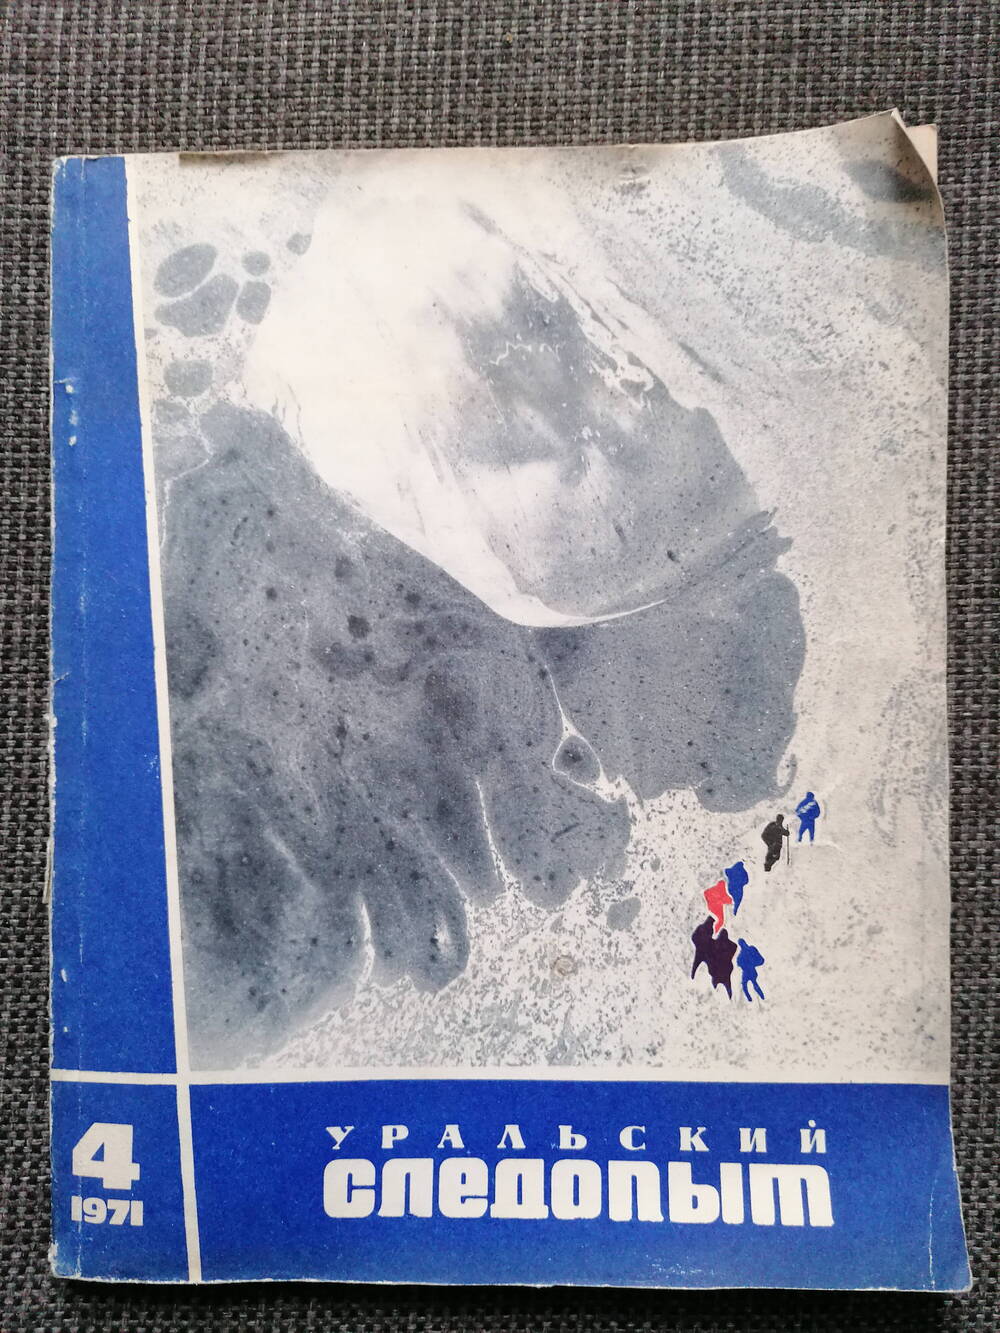 Журнал Уральский следопыт № 4, 1971 г.